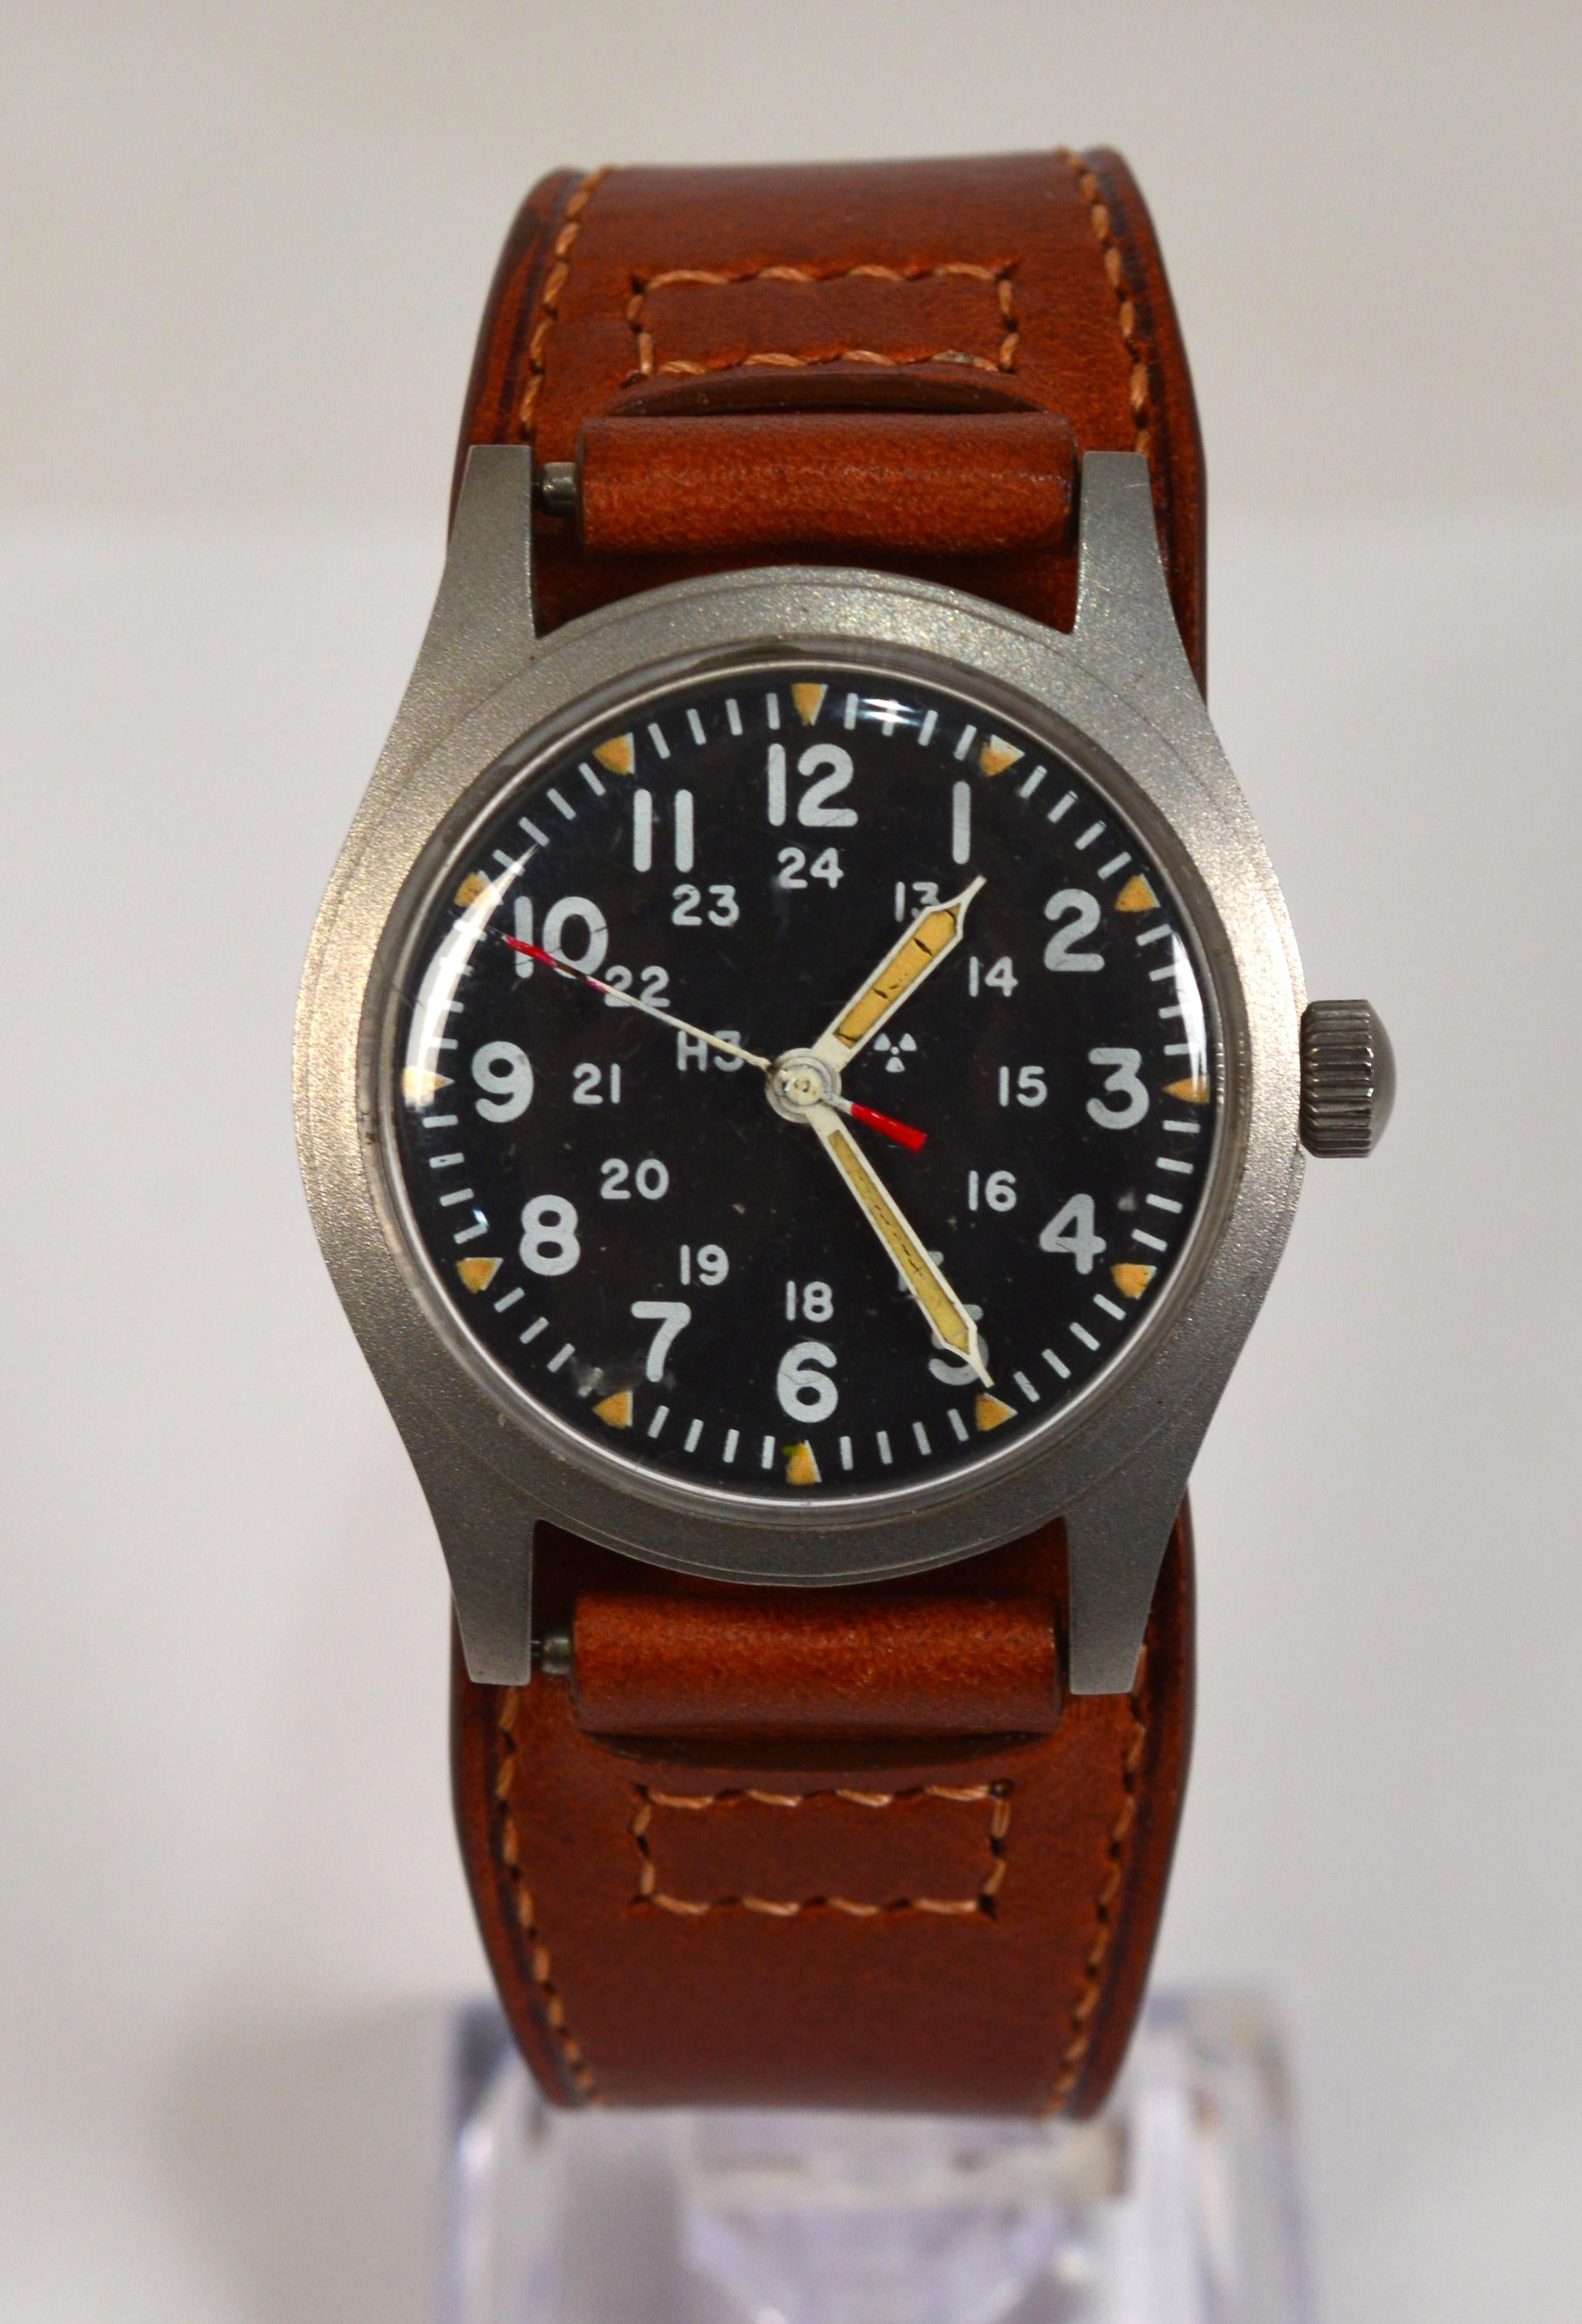 La montre-bracelet Hamilton 6645 Steel US Army a été présentée pour la première fois au personnel militaire à l'époque du Vietnam.  La montre identique a continué à être produite jusqu'en février 1982. Cette montre possède un boîtier en acier satiné